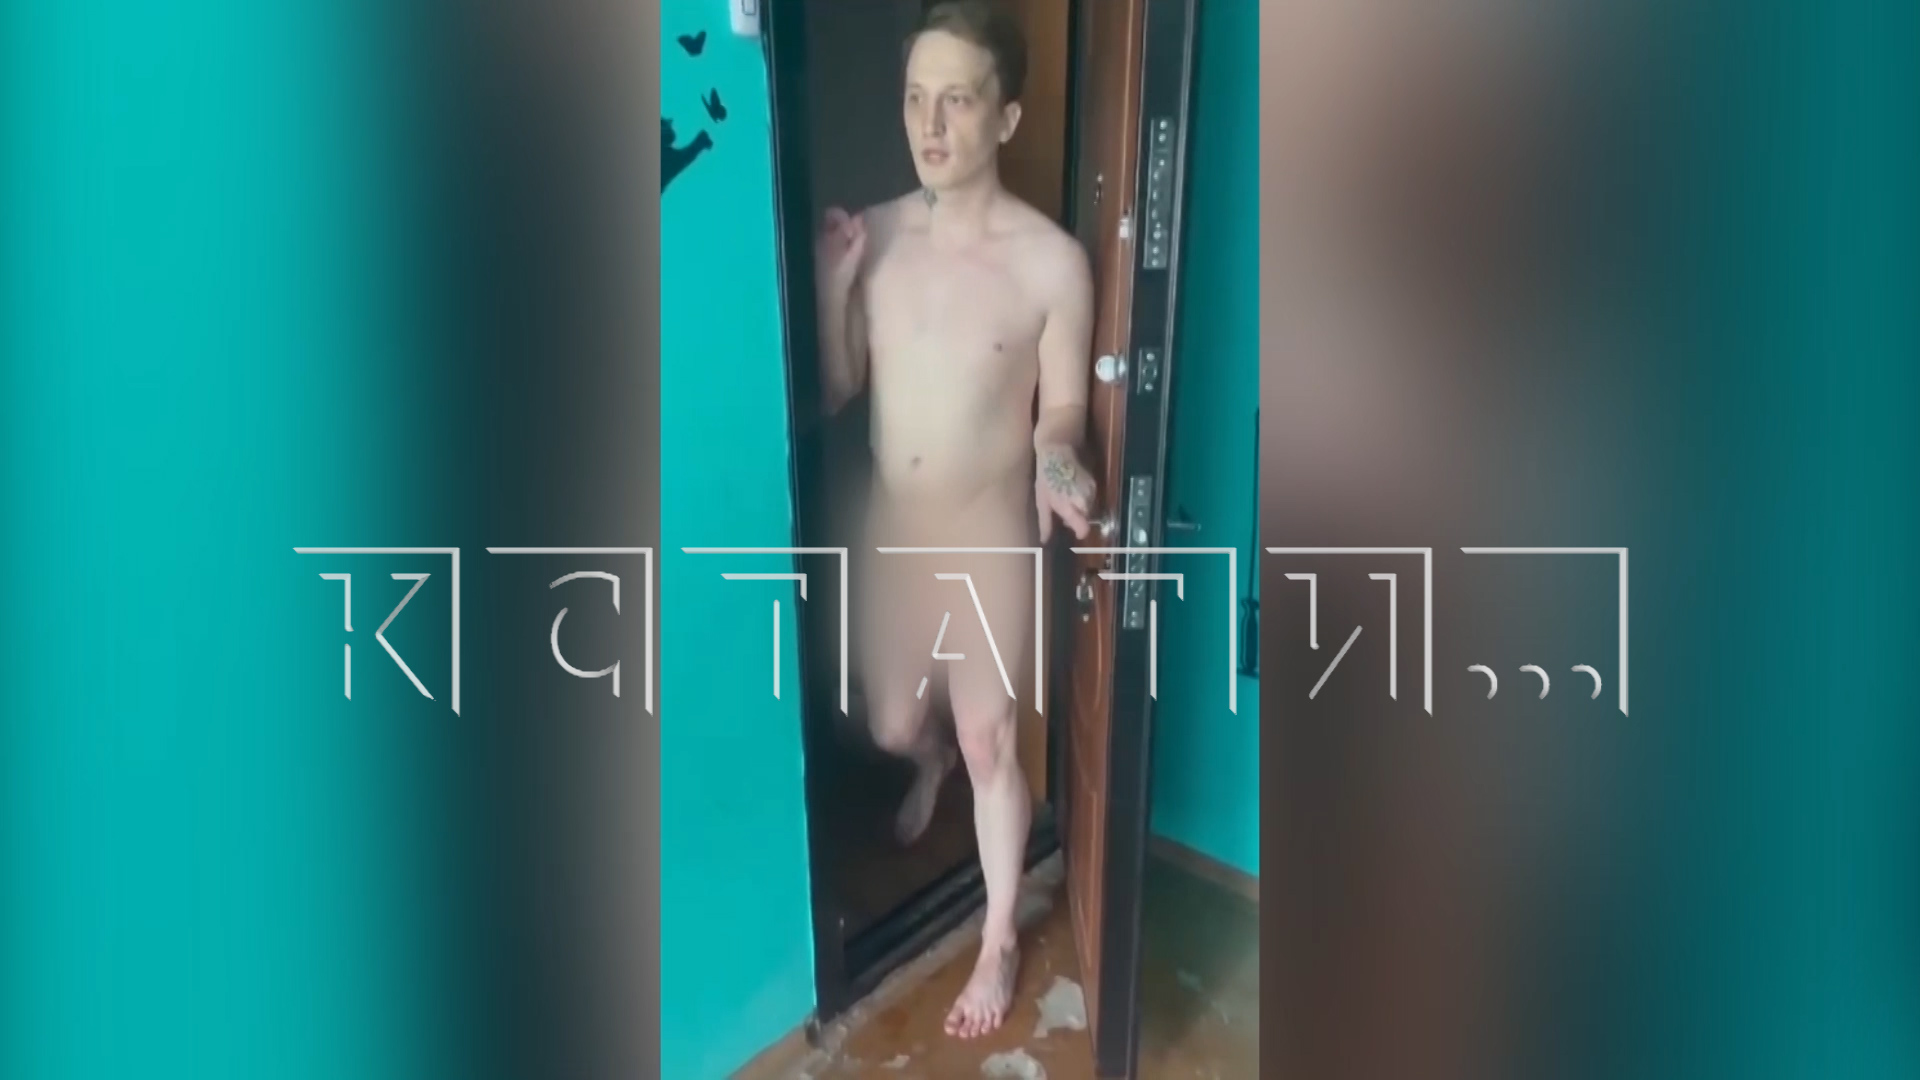 Сын-наркоман голым более часа убивал родную мать, а соседи снимали видео и пытались вызвать полицию